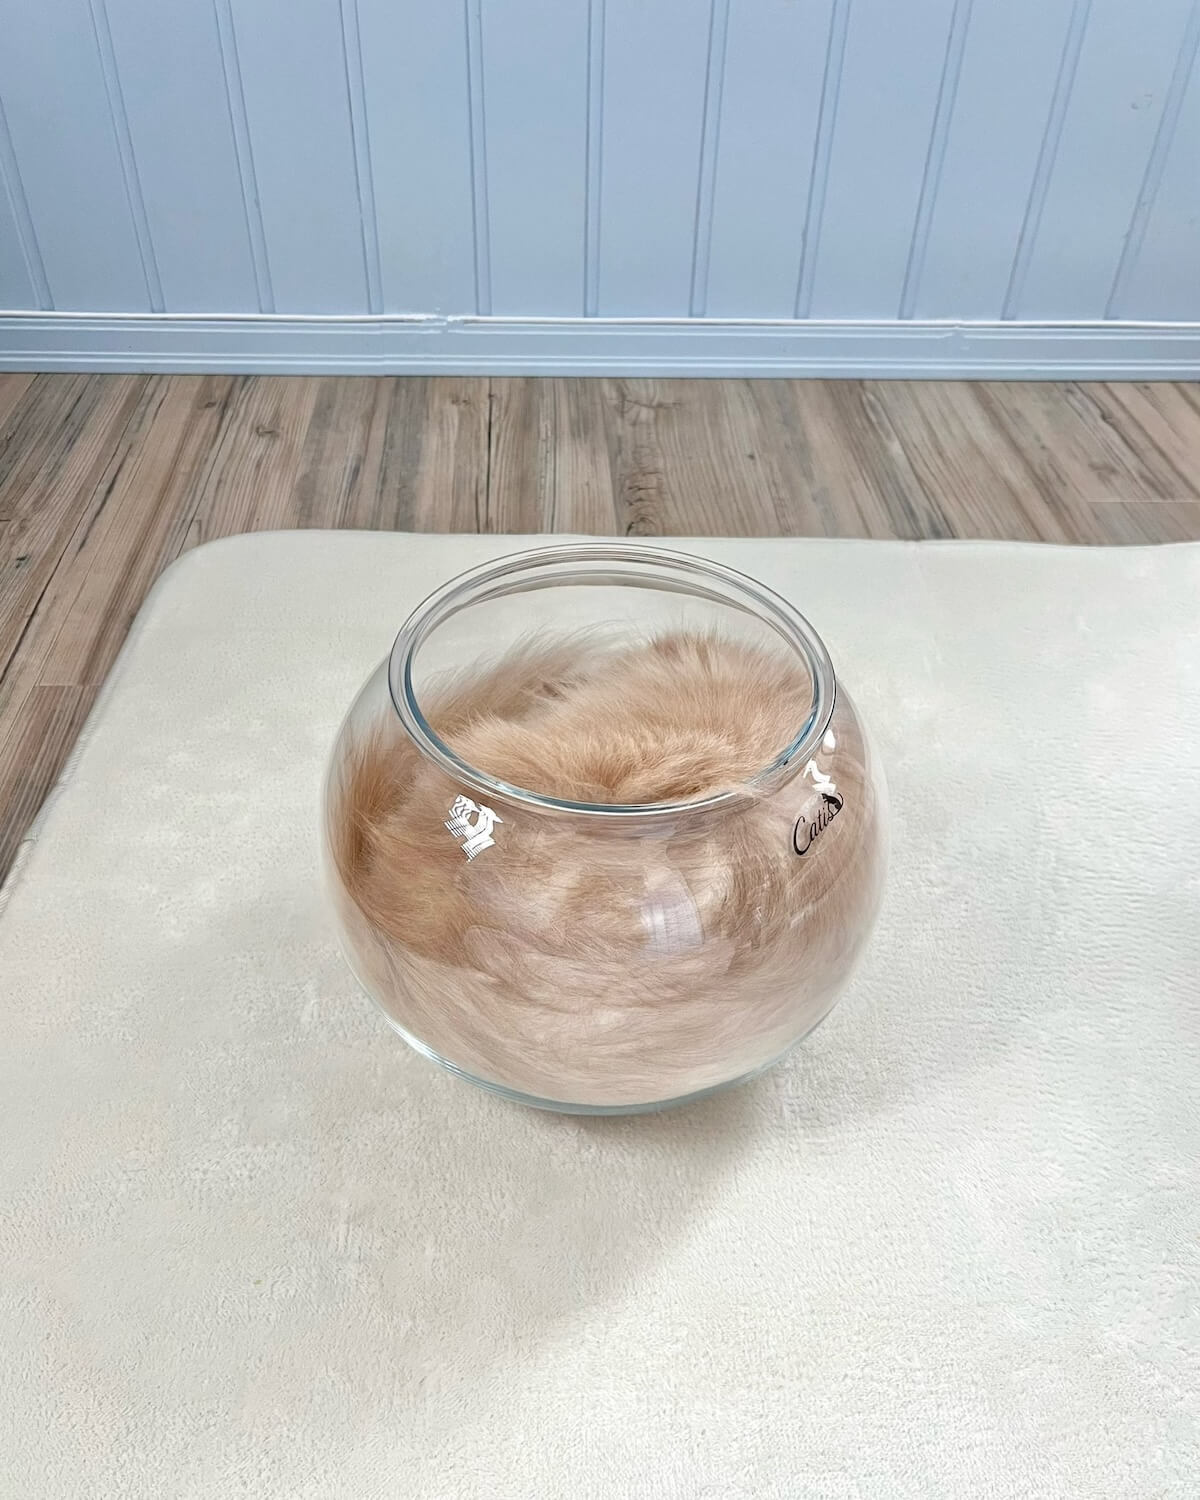 カフェオレのように見える透明な鉢の中に入った猫